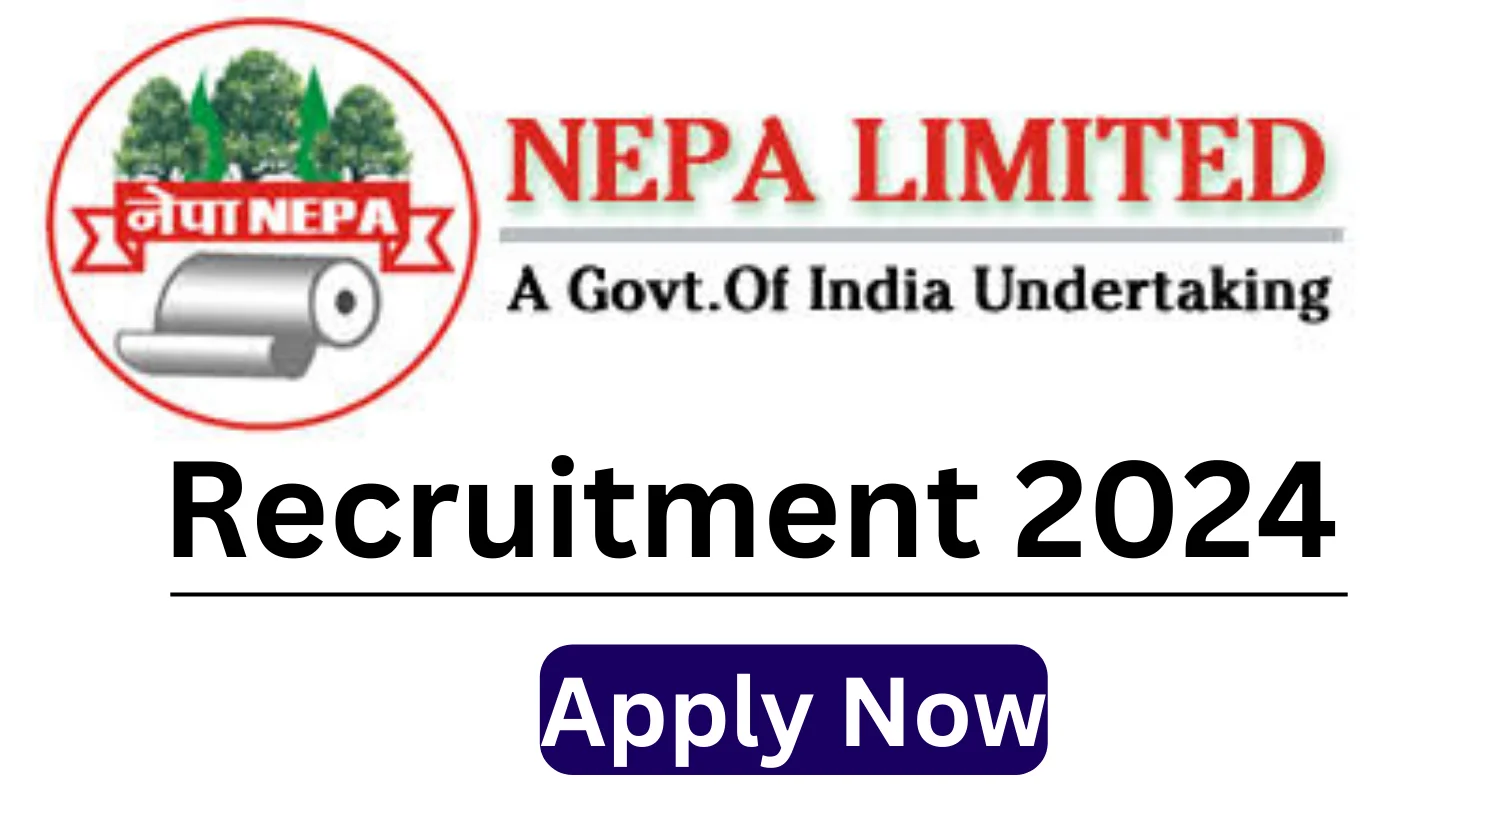 NEPA Limited Recruitment 2024